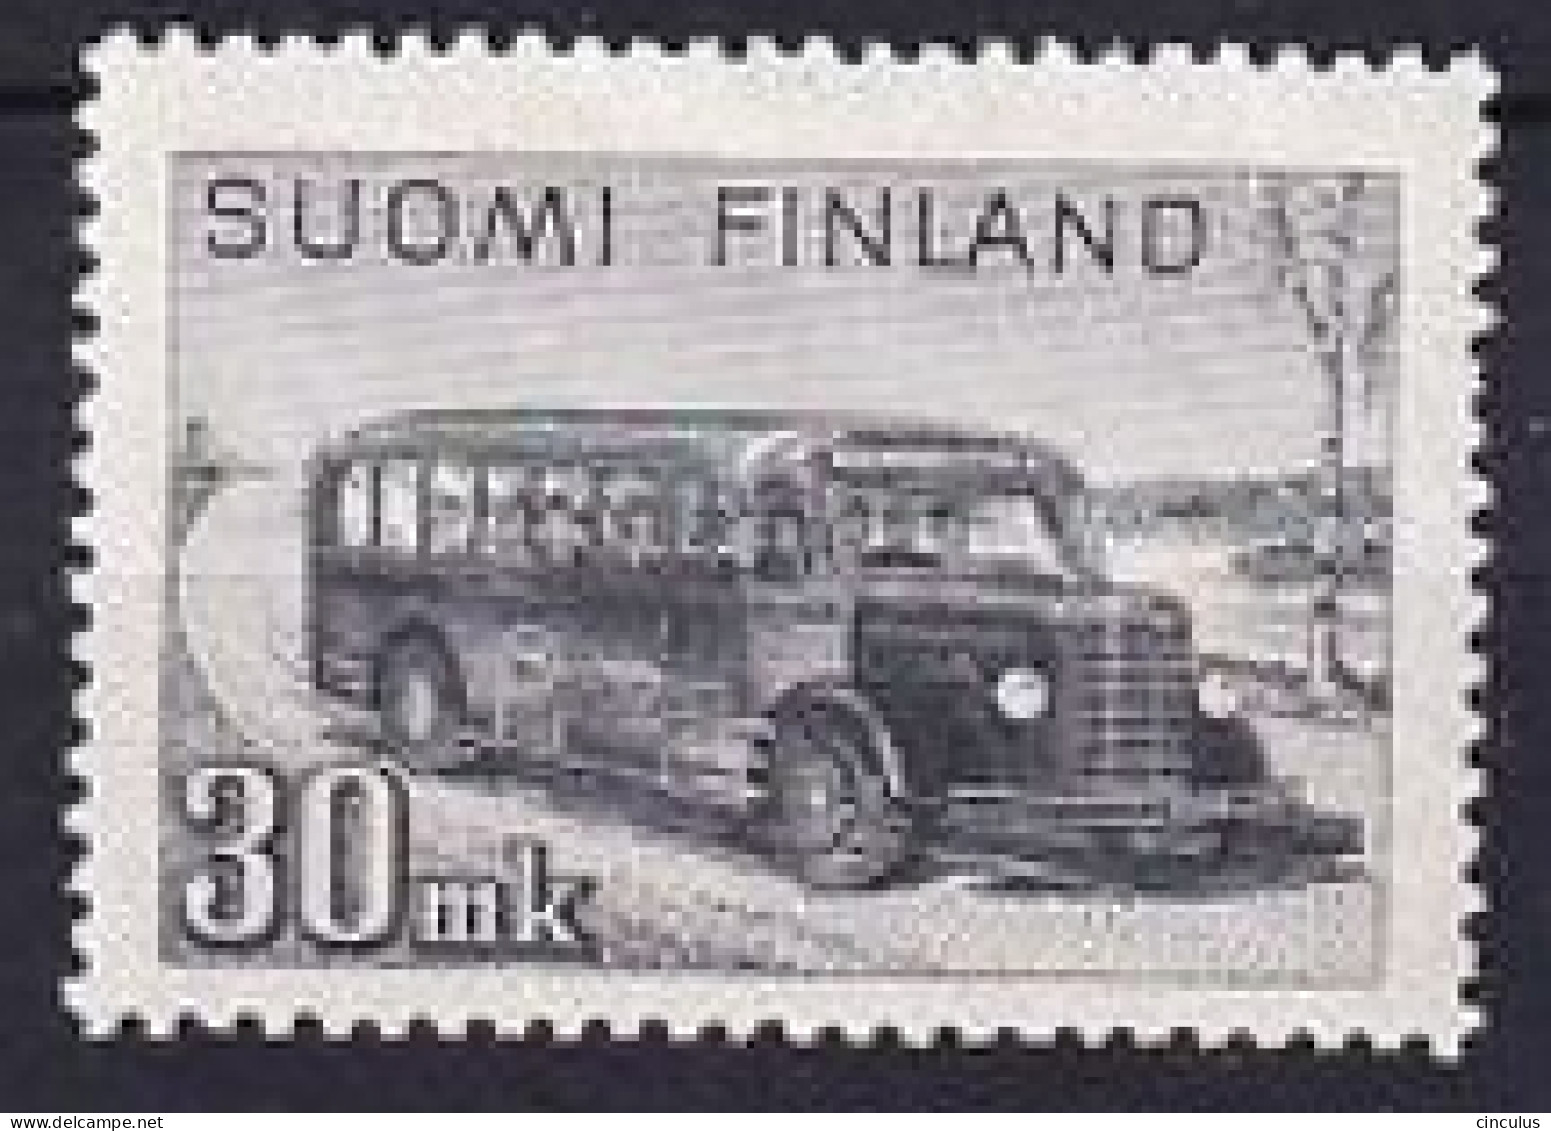 1946. Finland. Post And Travel Coach. 30 M. MNH. Mi. Nr. 330 - Ungebraucht